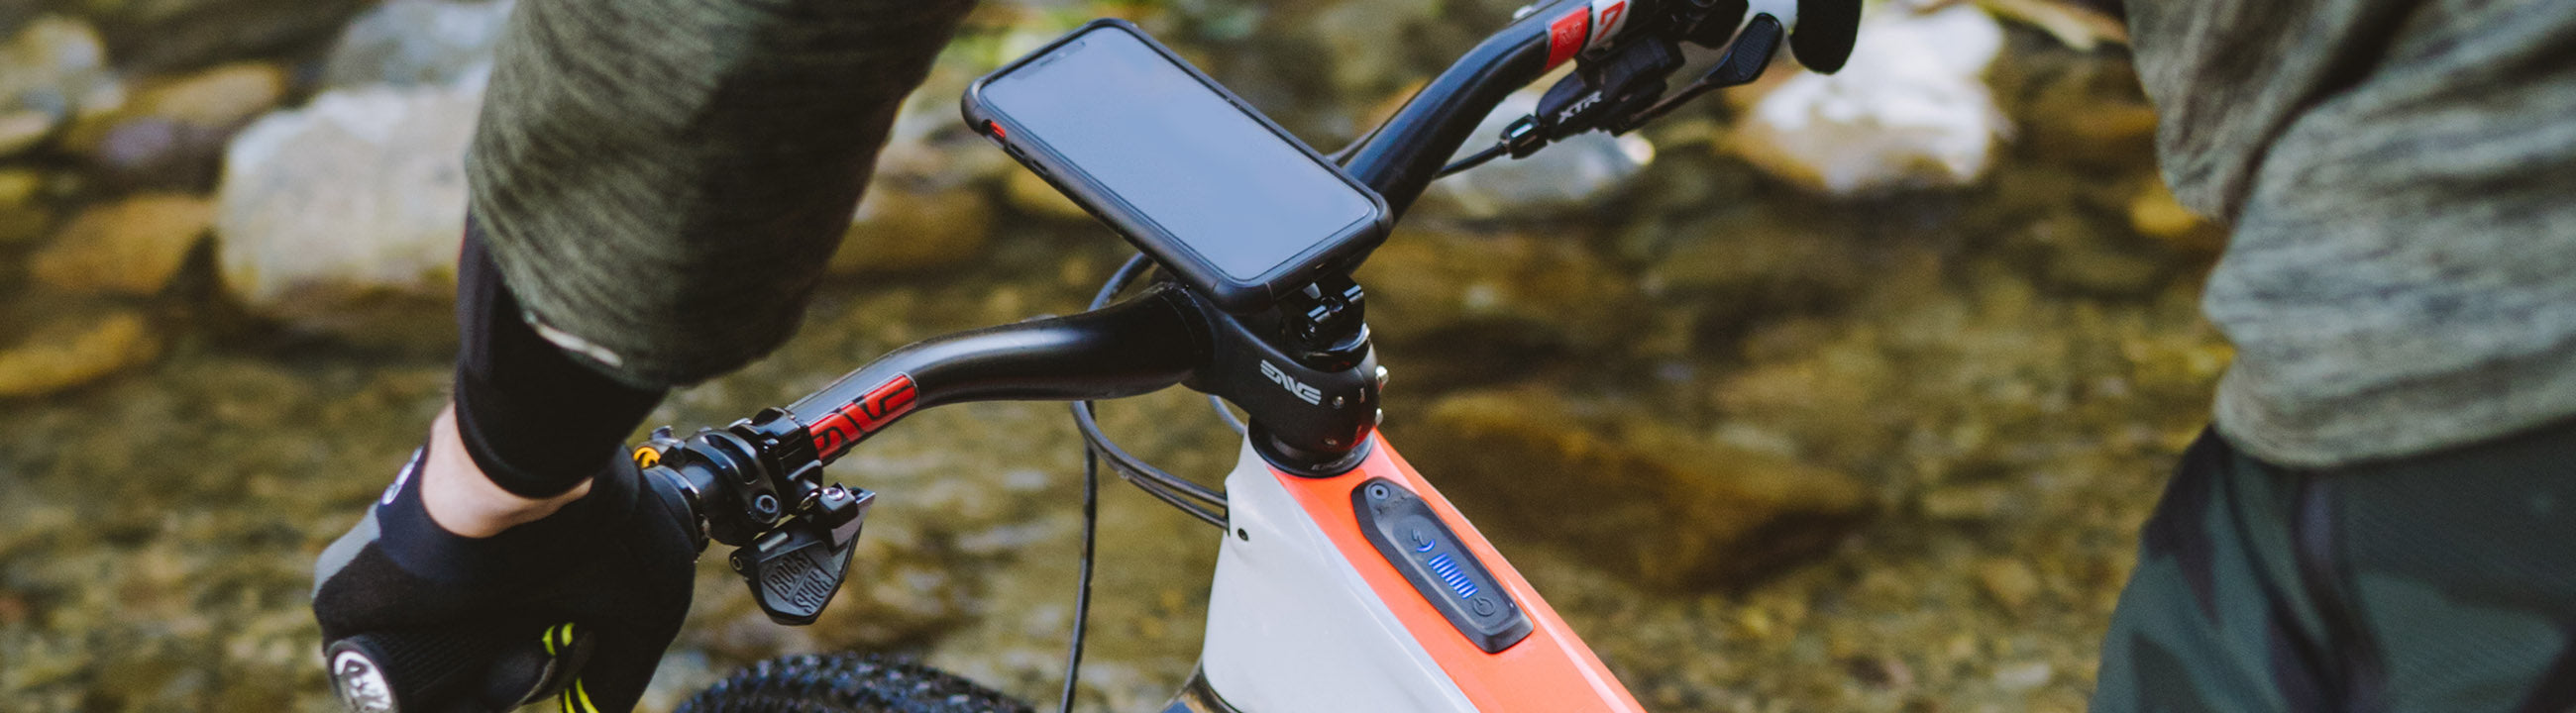 5 avantages d'emporter son téléphone à vélo - Rokform